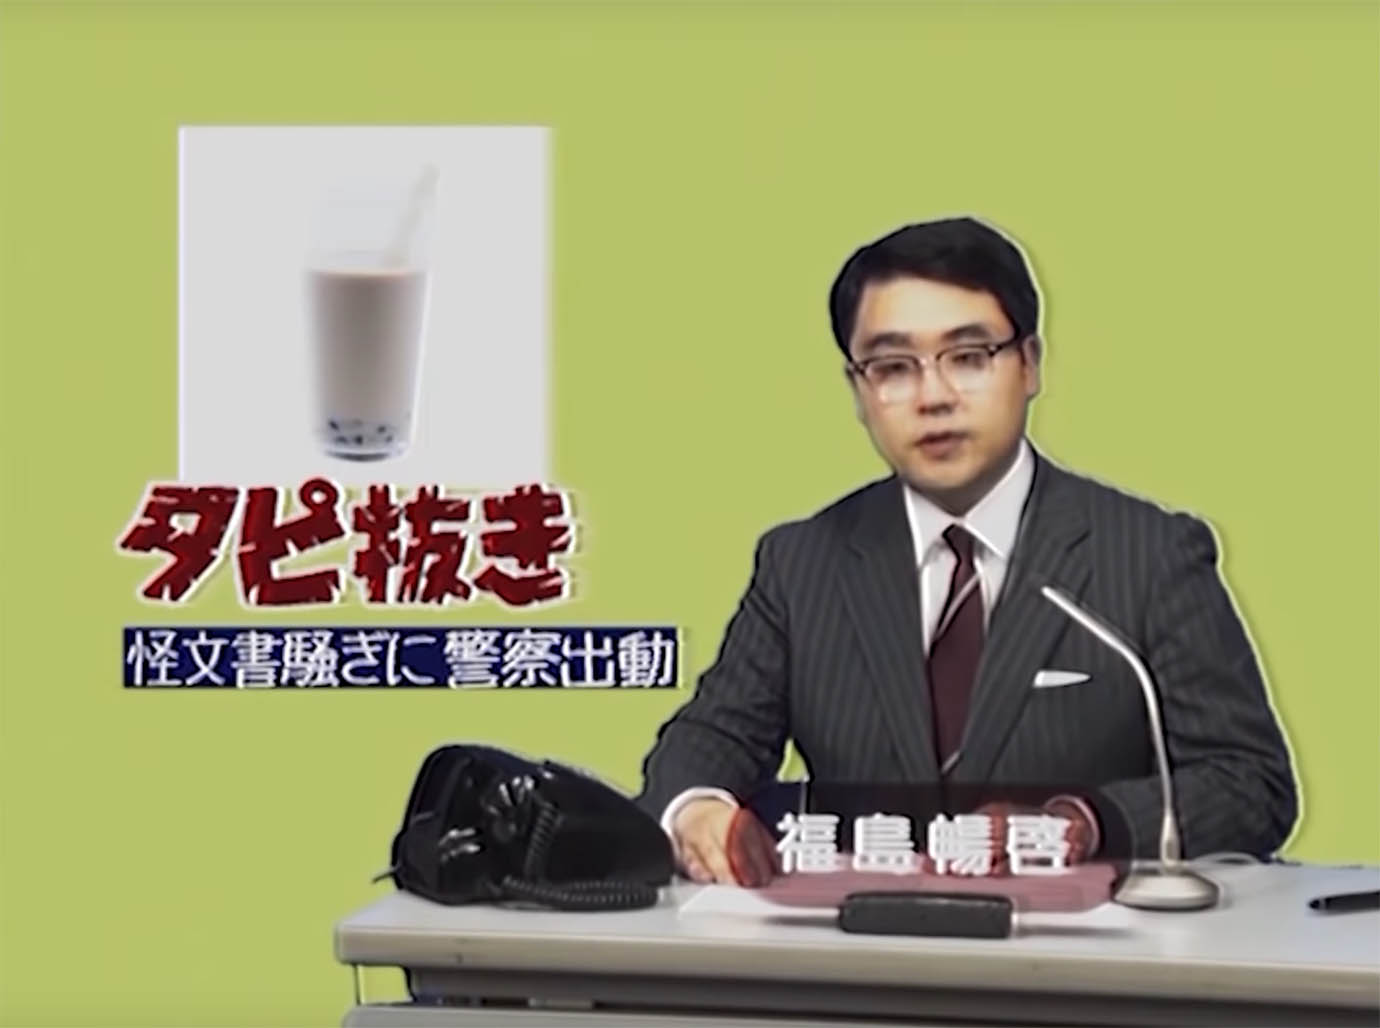 【衝撃動画】令和時代に作った昭和時代のニュース動画がスゴイ / タピオカブームを昭和風に再現